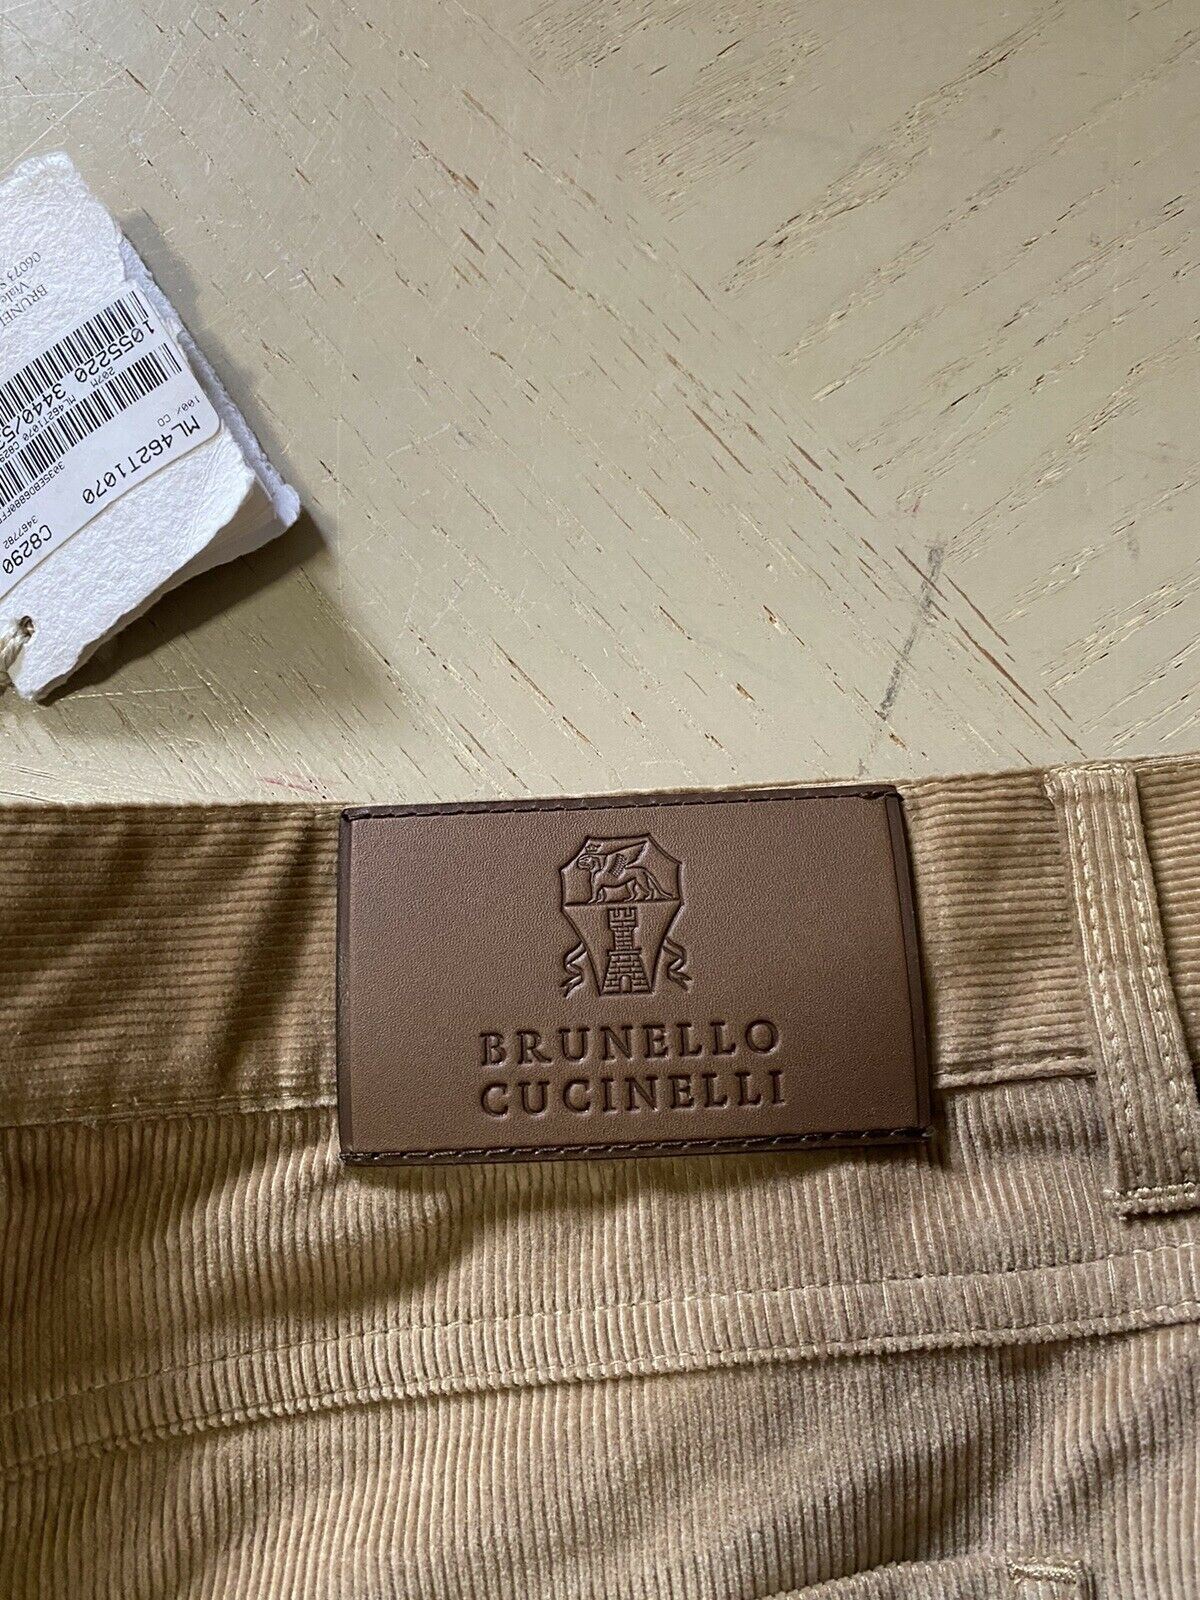 NWT $1025 Brunello Cucinelli Мужские вельветовые бархатные брюки цвета хаки 38 США/54 ЕС Италия